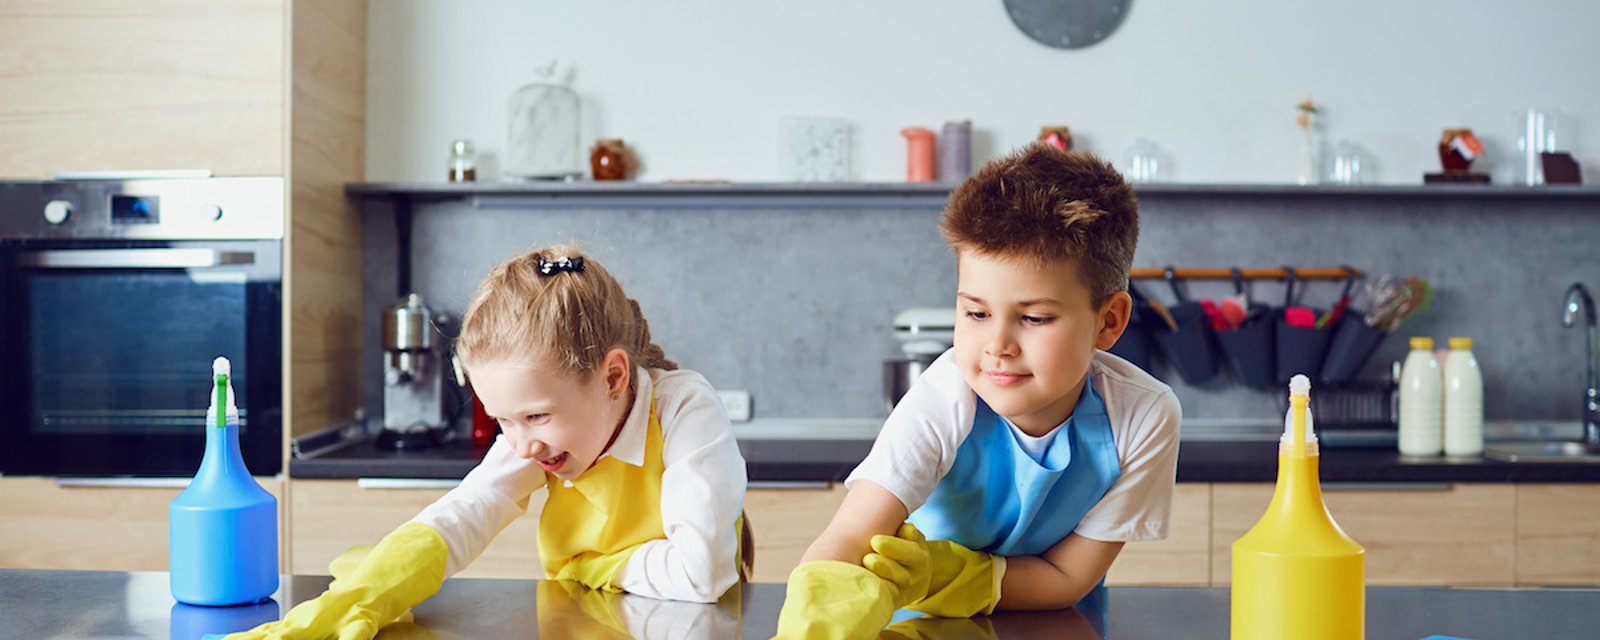 Les enfants qui participent aux tâches ménagères feront des adultes qui réussissent